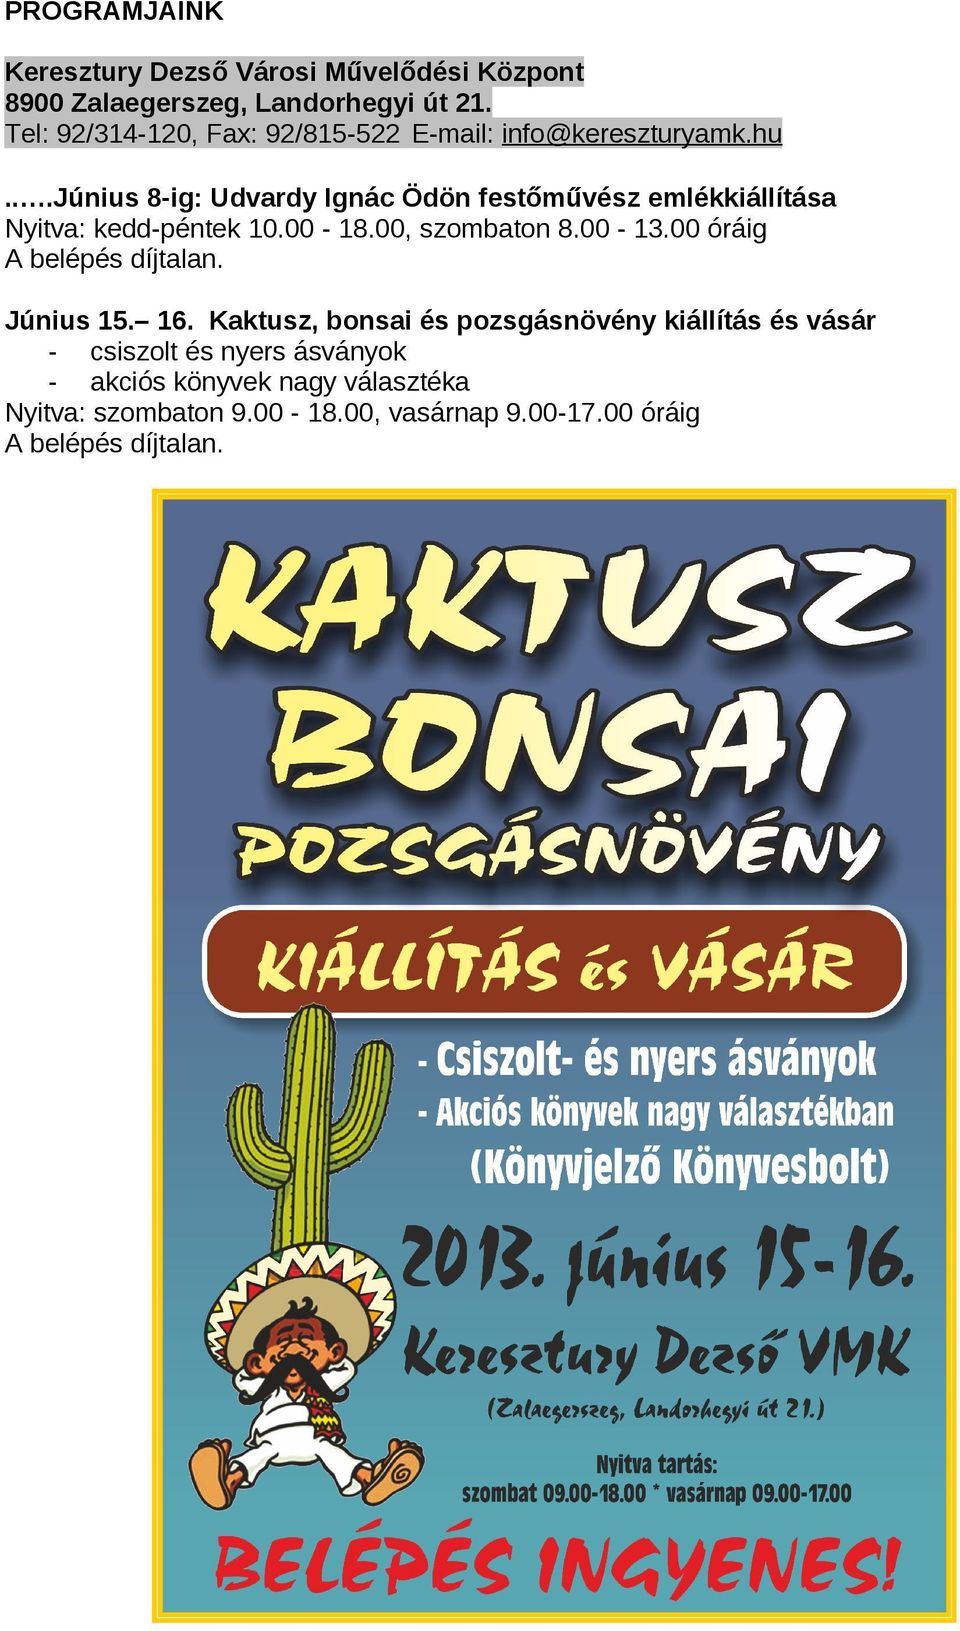 ..június 8-ig: Udvardy Ignác Ödön festőművész emlékkiállítása Nyitva: kedd-péntek 10.00-18.00, szombaton 8.00-13.